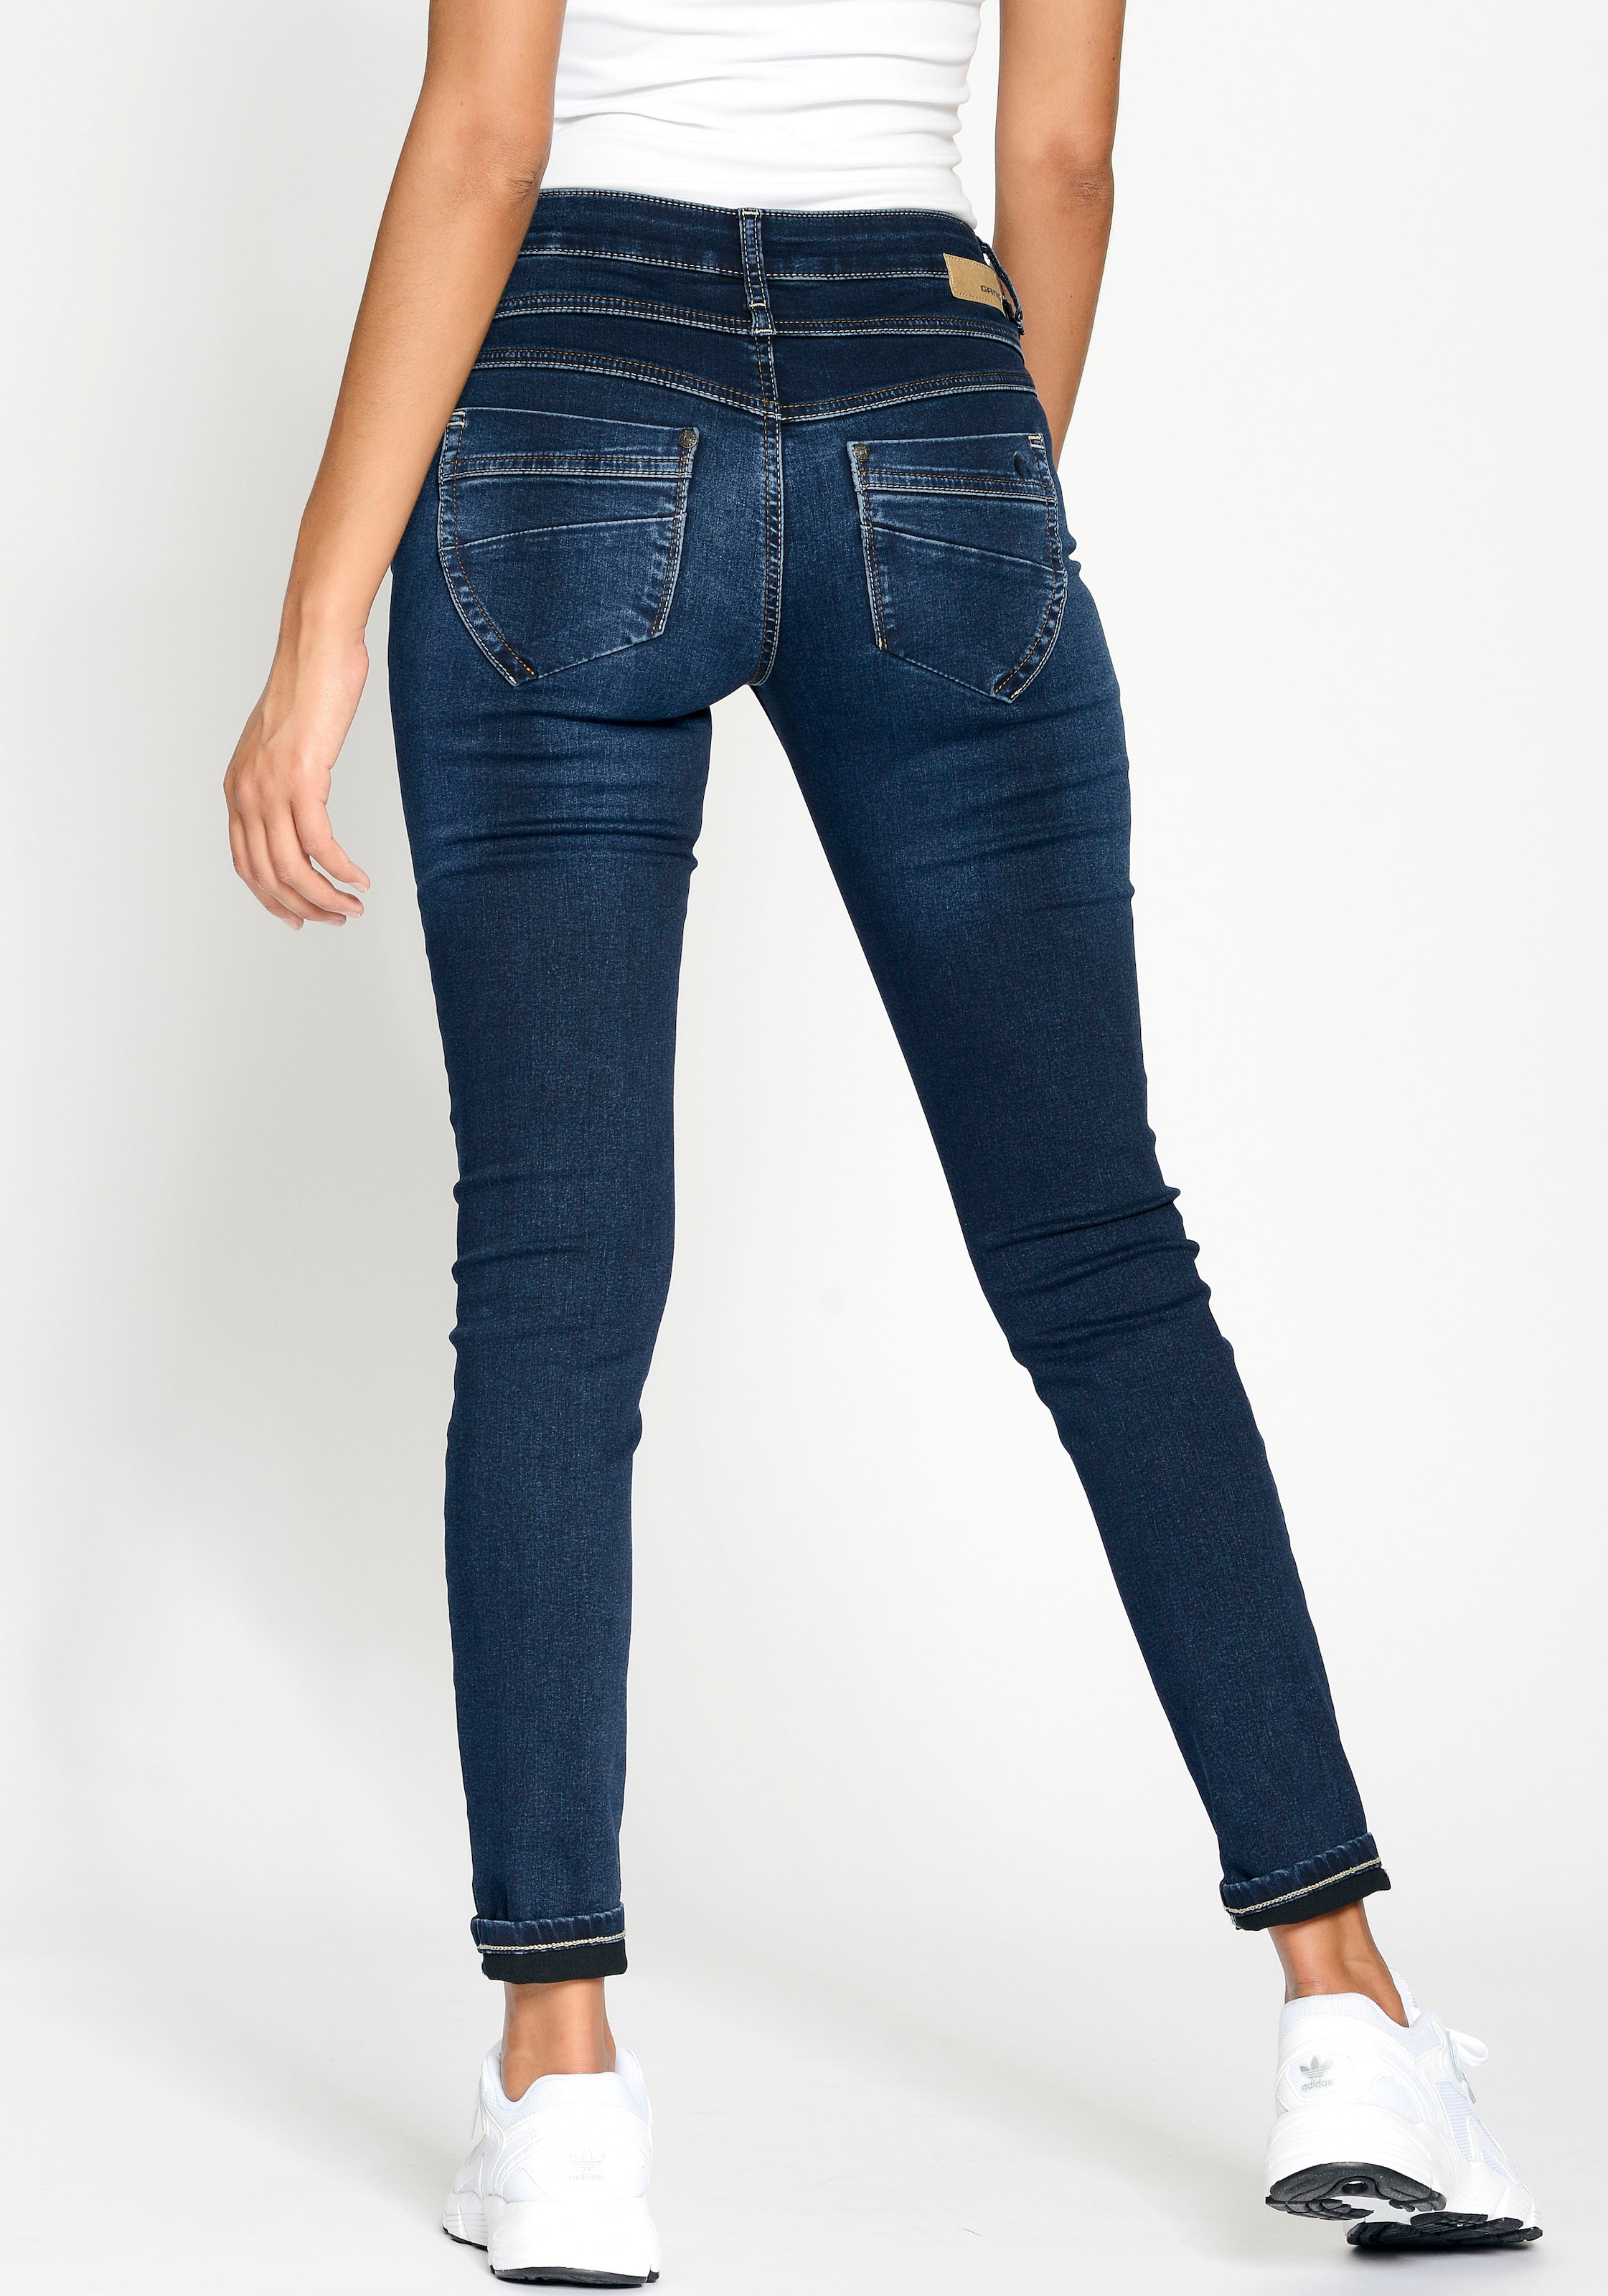 | 3-Knopf-Verschluss mit Passe und Skinny-fit-Jeans für vorne GANG bestellen »94MORA«, BAUR